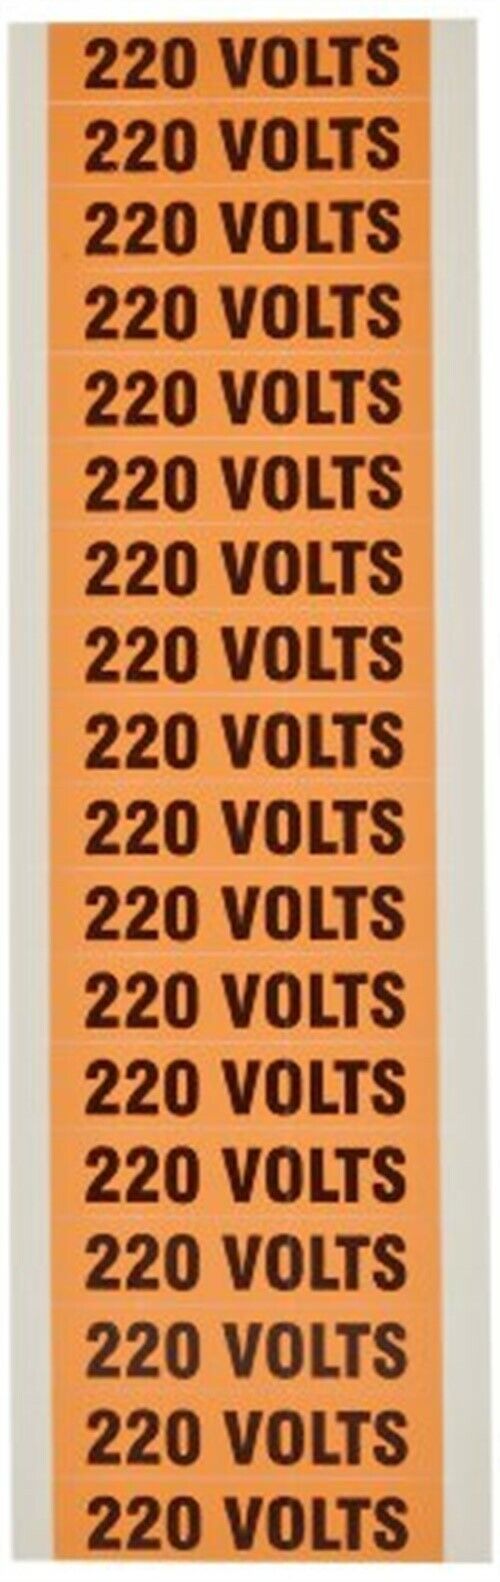 21334, (18)Volt Markers 220V (5 Pack)